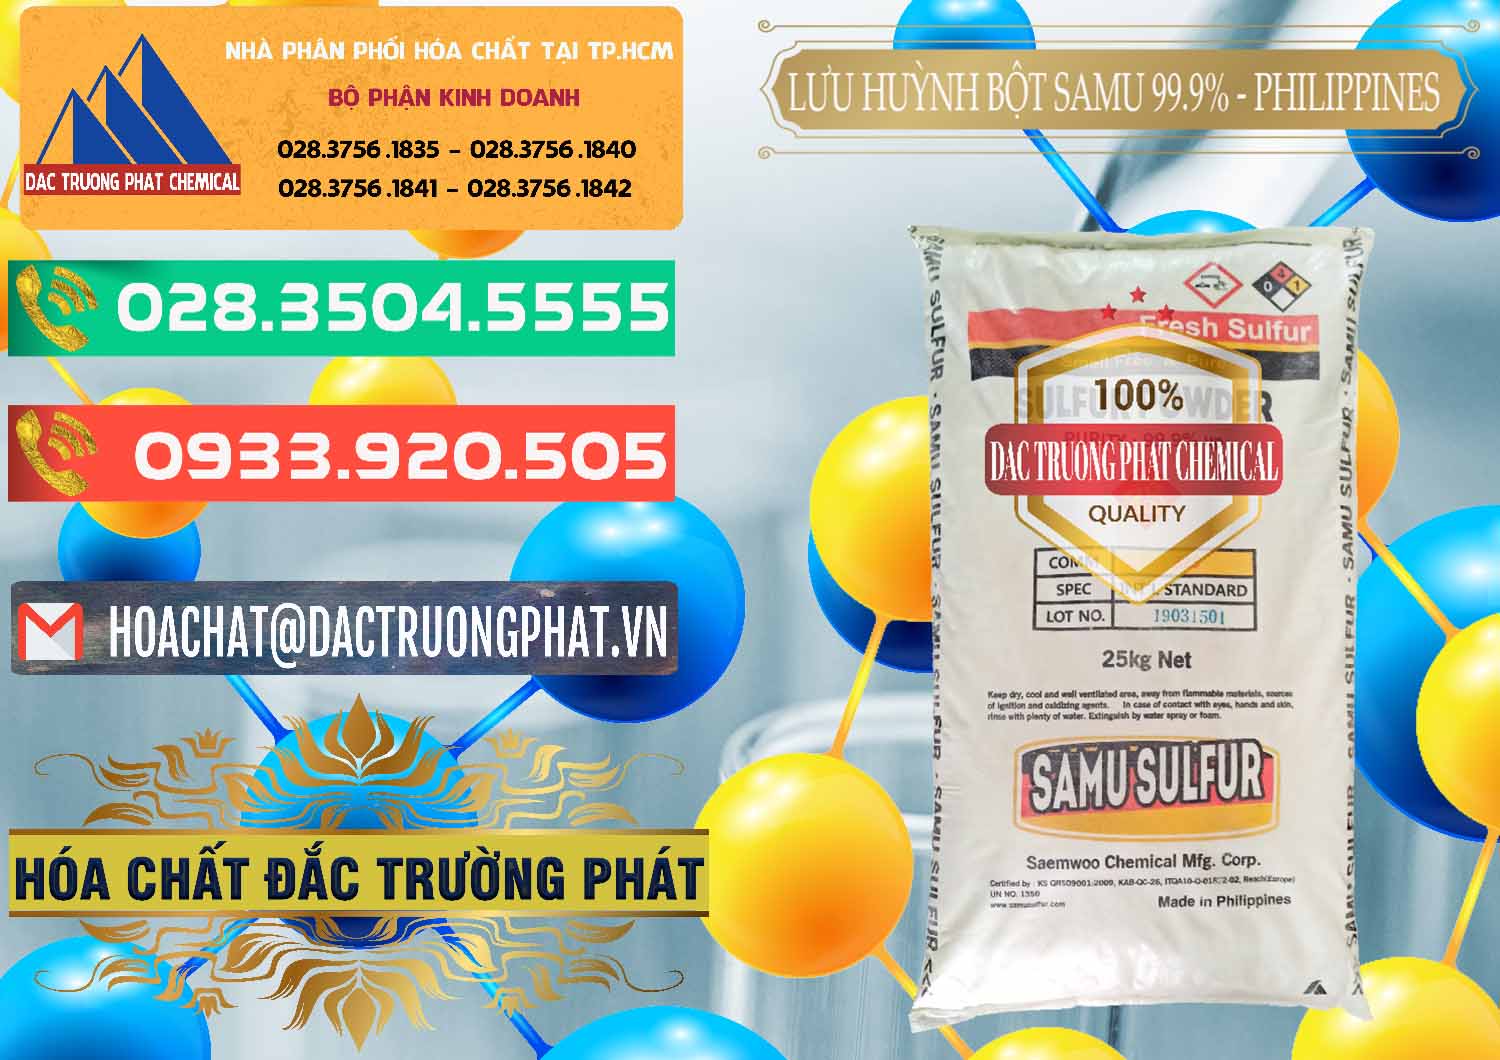 Chuyên kinh doanh _ bán Lưu huỳnh Bột - Sulfur Powder Samu Philippines - 0201 - Công ty chuyên cung cấp và kinh doanh hóa chất tại TP.HCM - congtyhoachat.com.vn